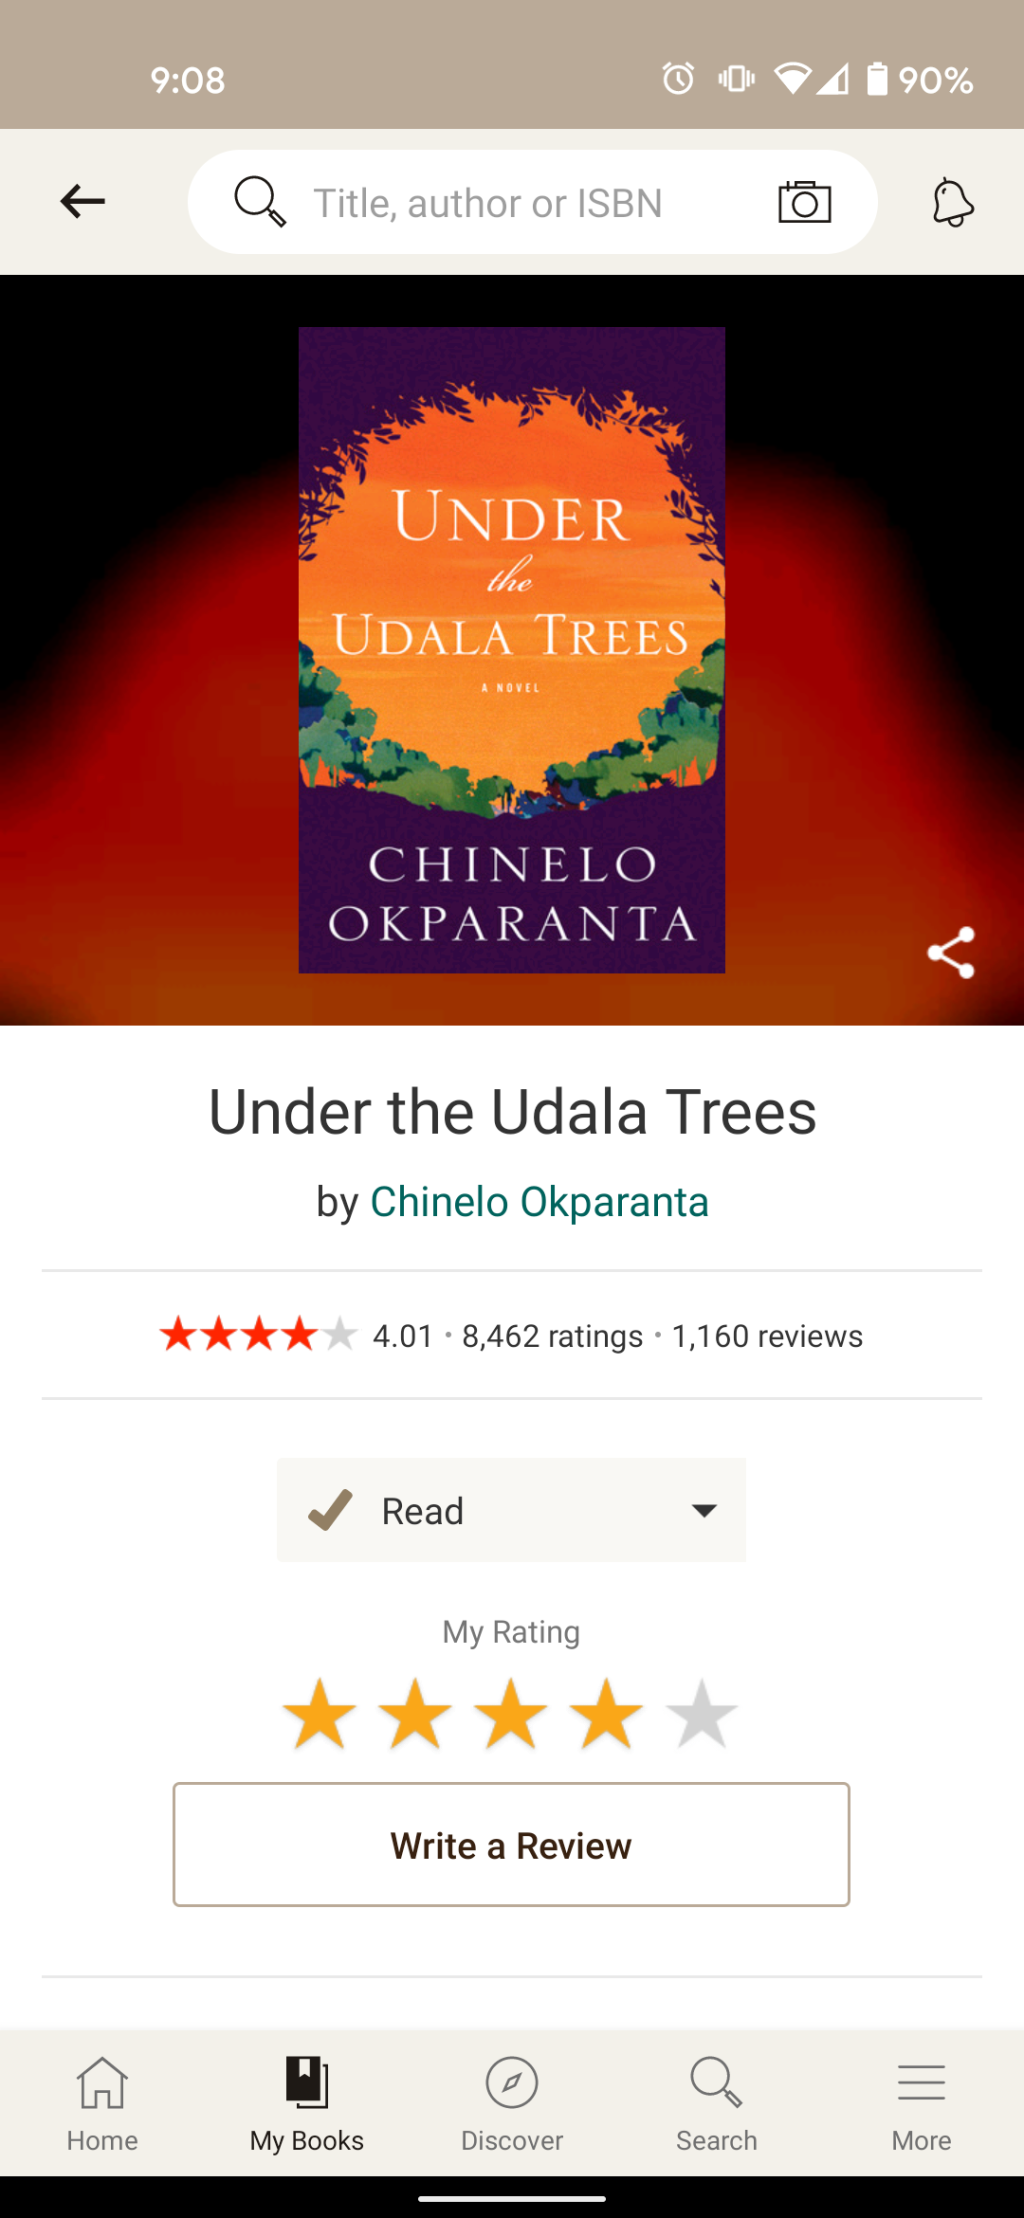 Under the Udala Trees